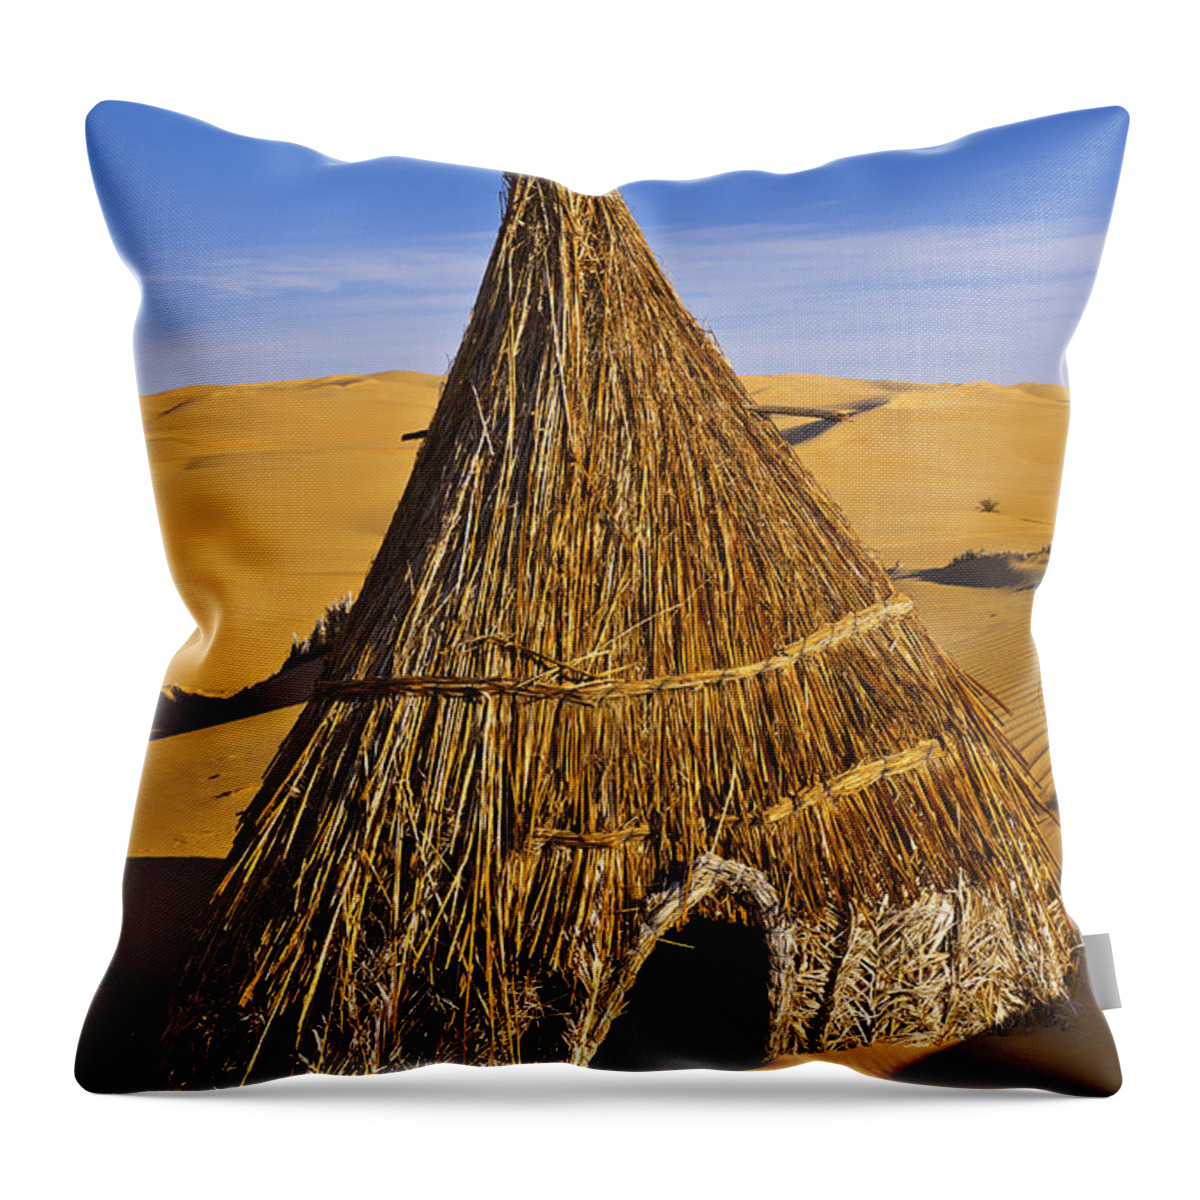 Landscape Throw Pillow featuring the photograph Desert hut by Ivan Slosar